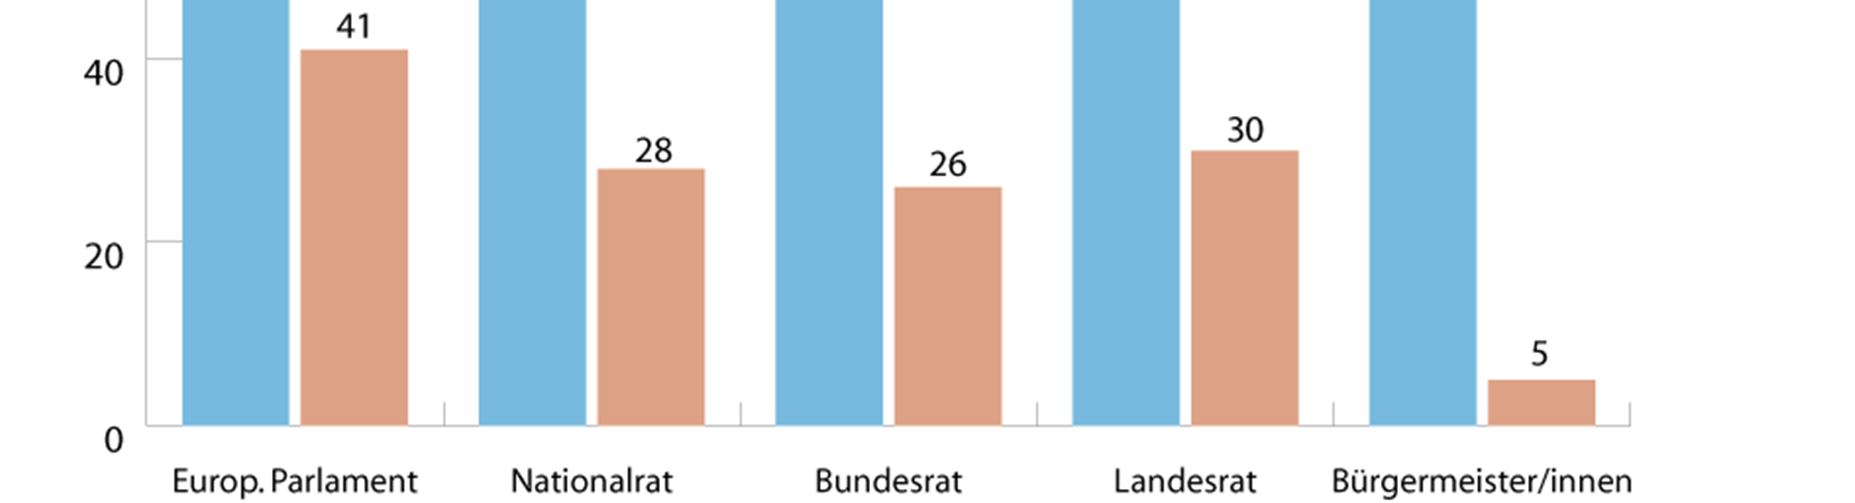 Politische Partizipation von Frauen in Österreich Politische Partizipation in Österreich 2010 in %